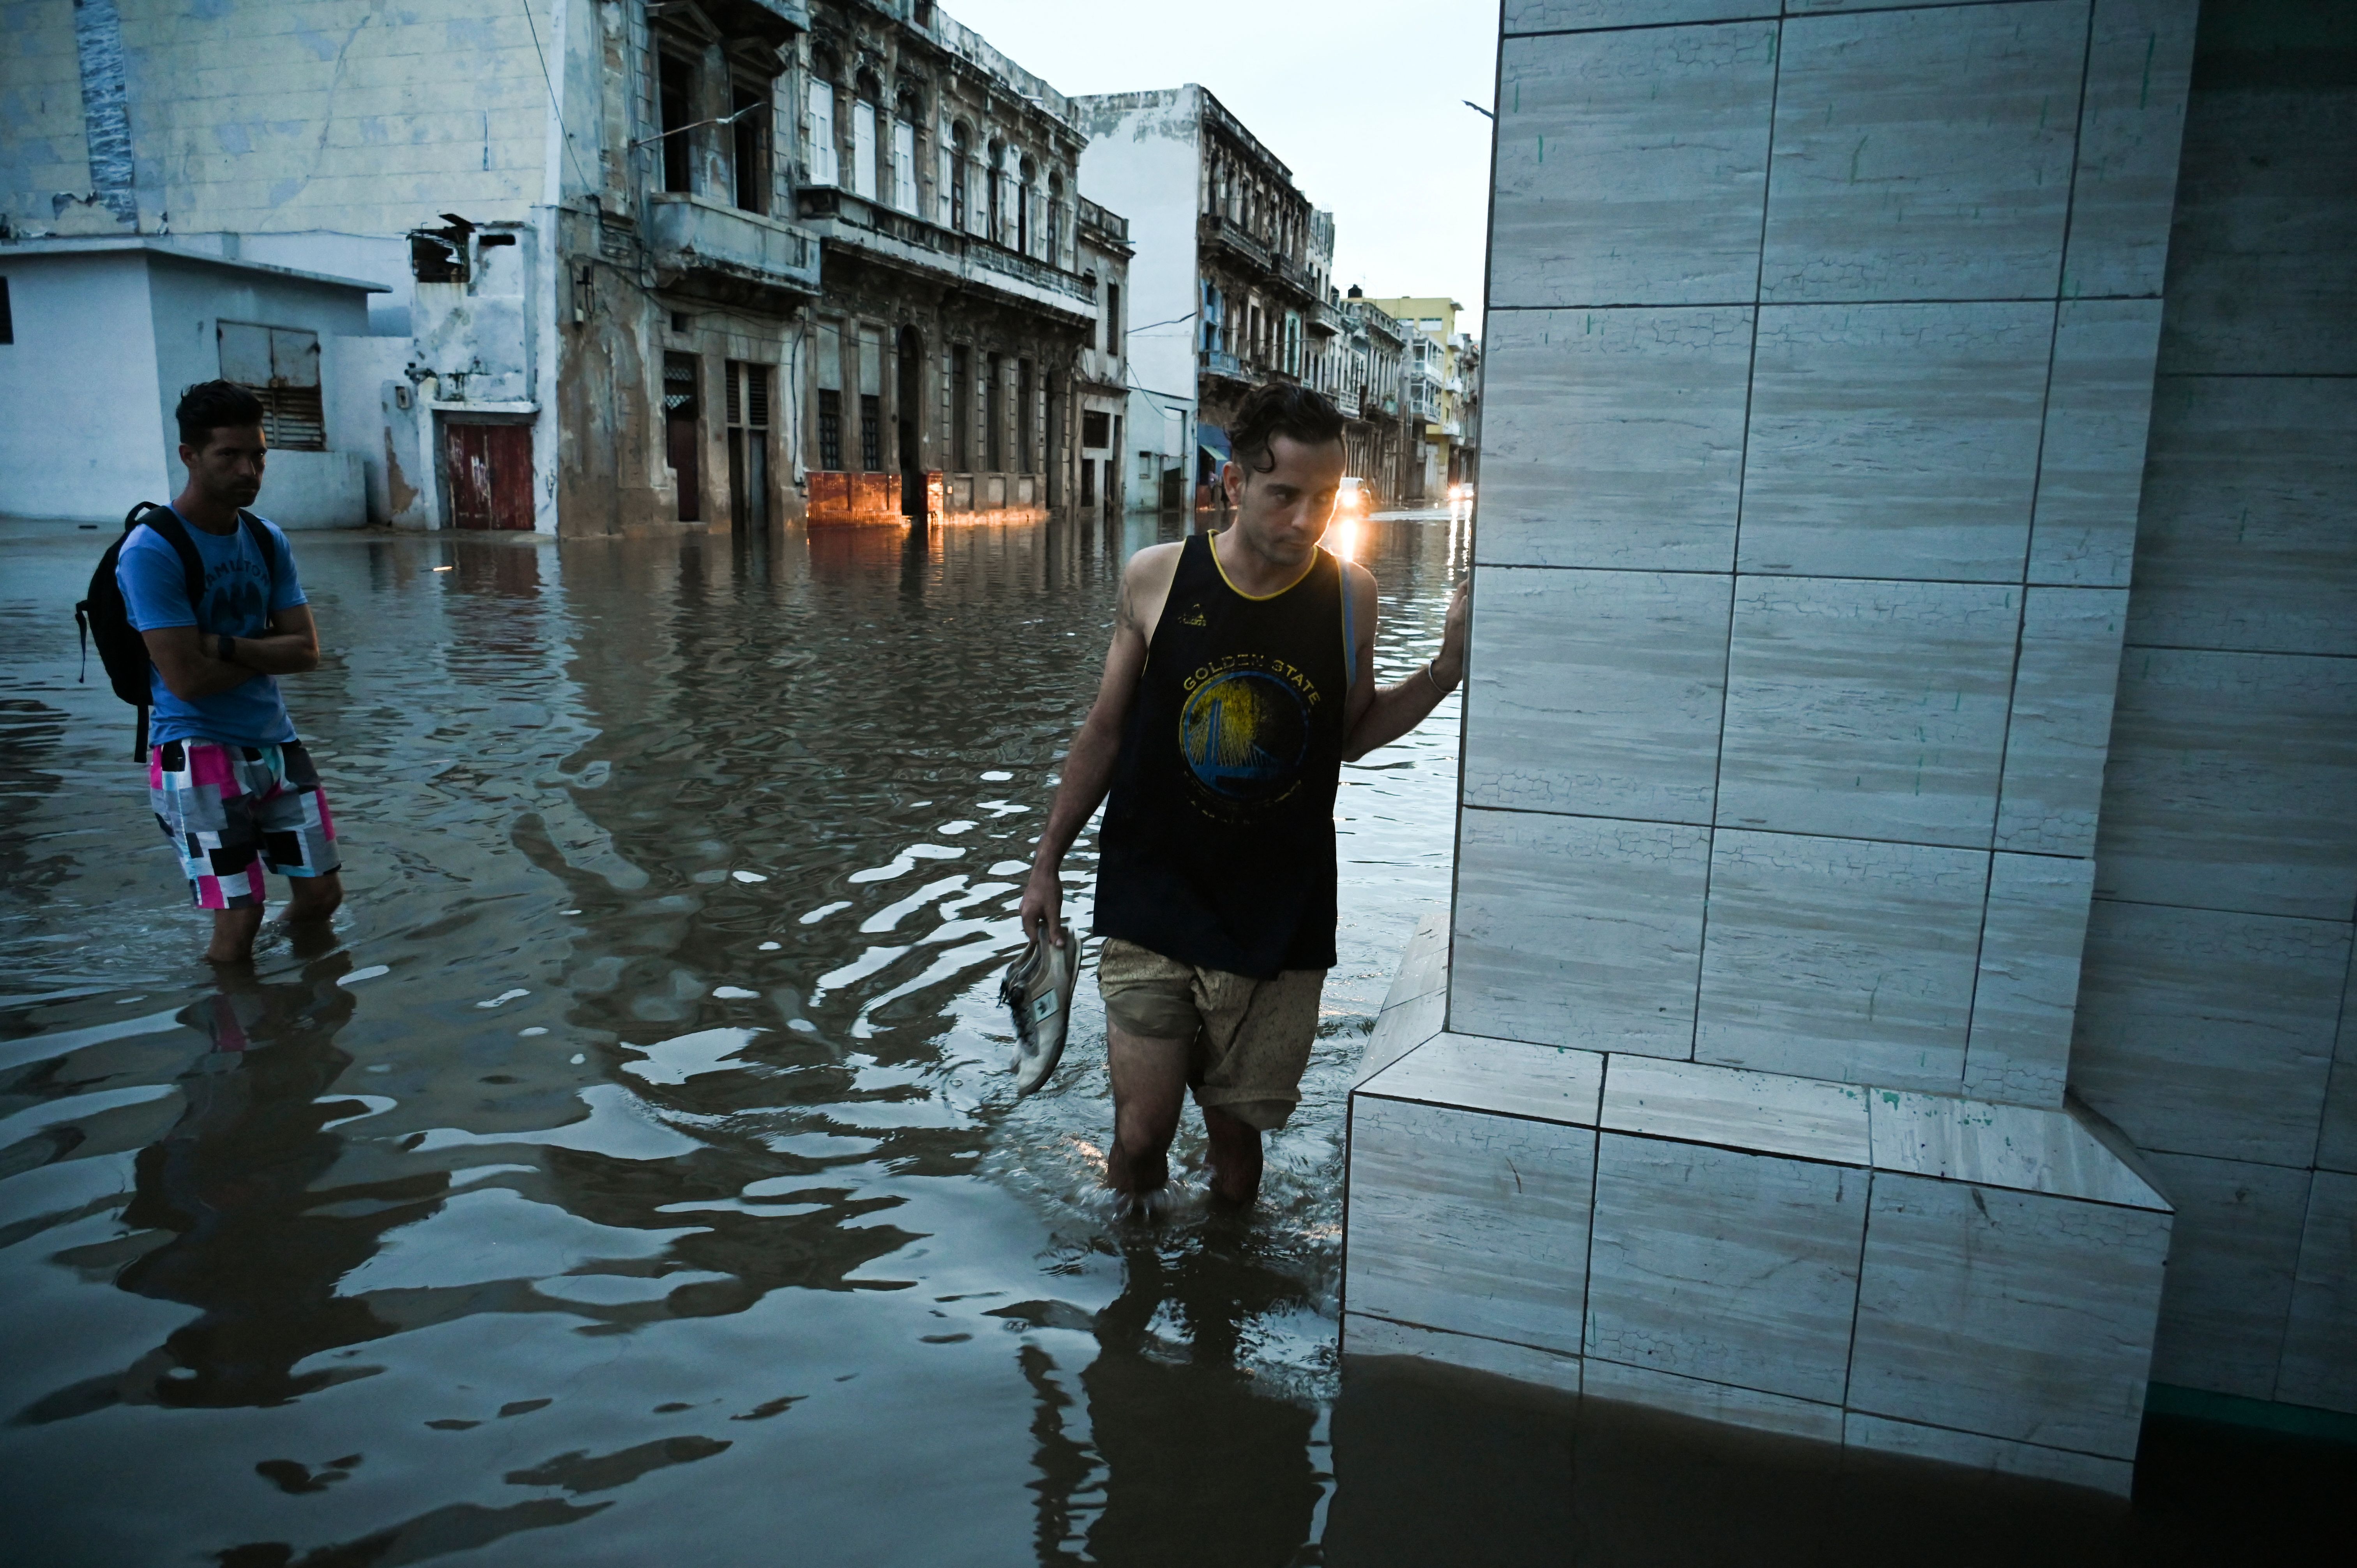 two people walking through a flooded street in Havana, Cuba